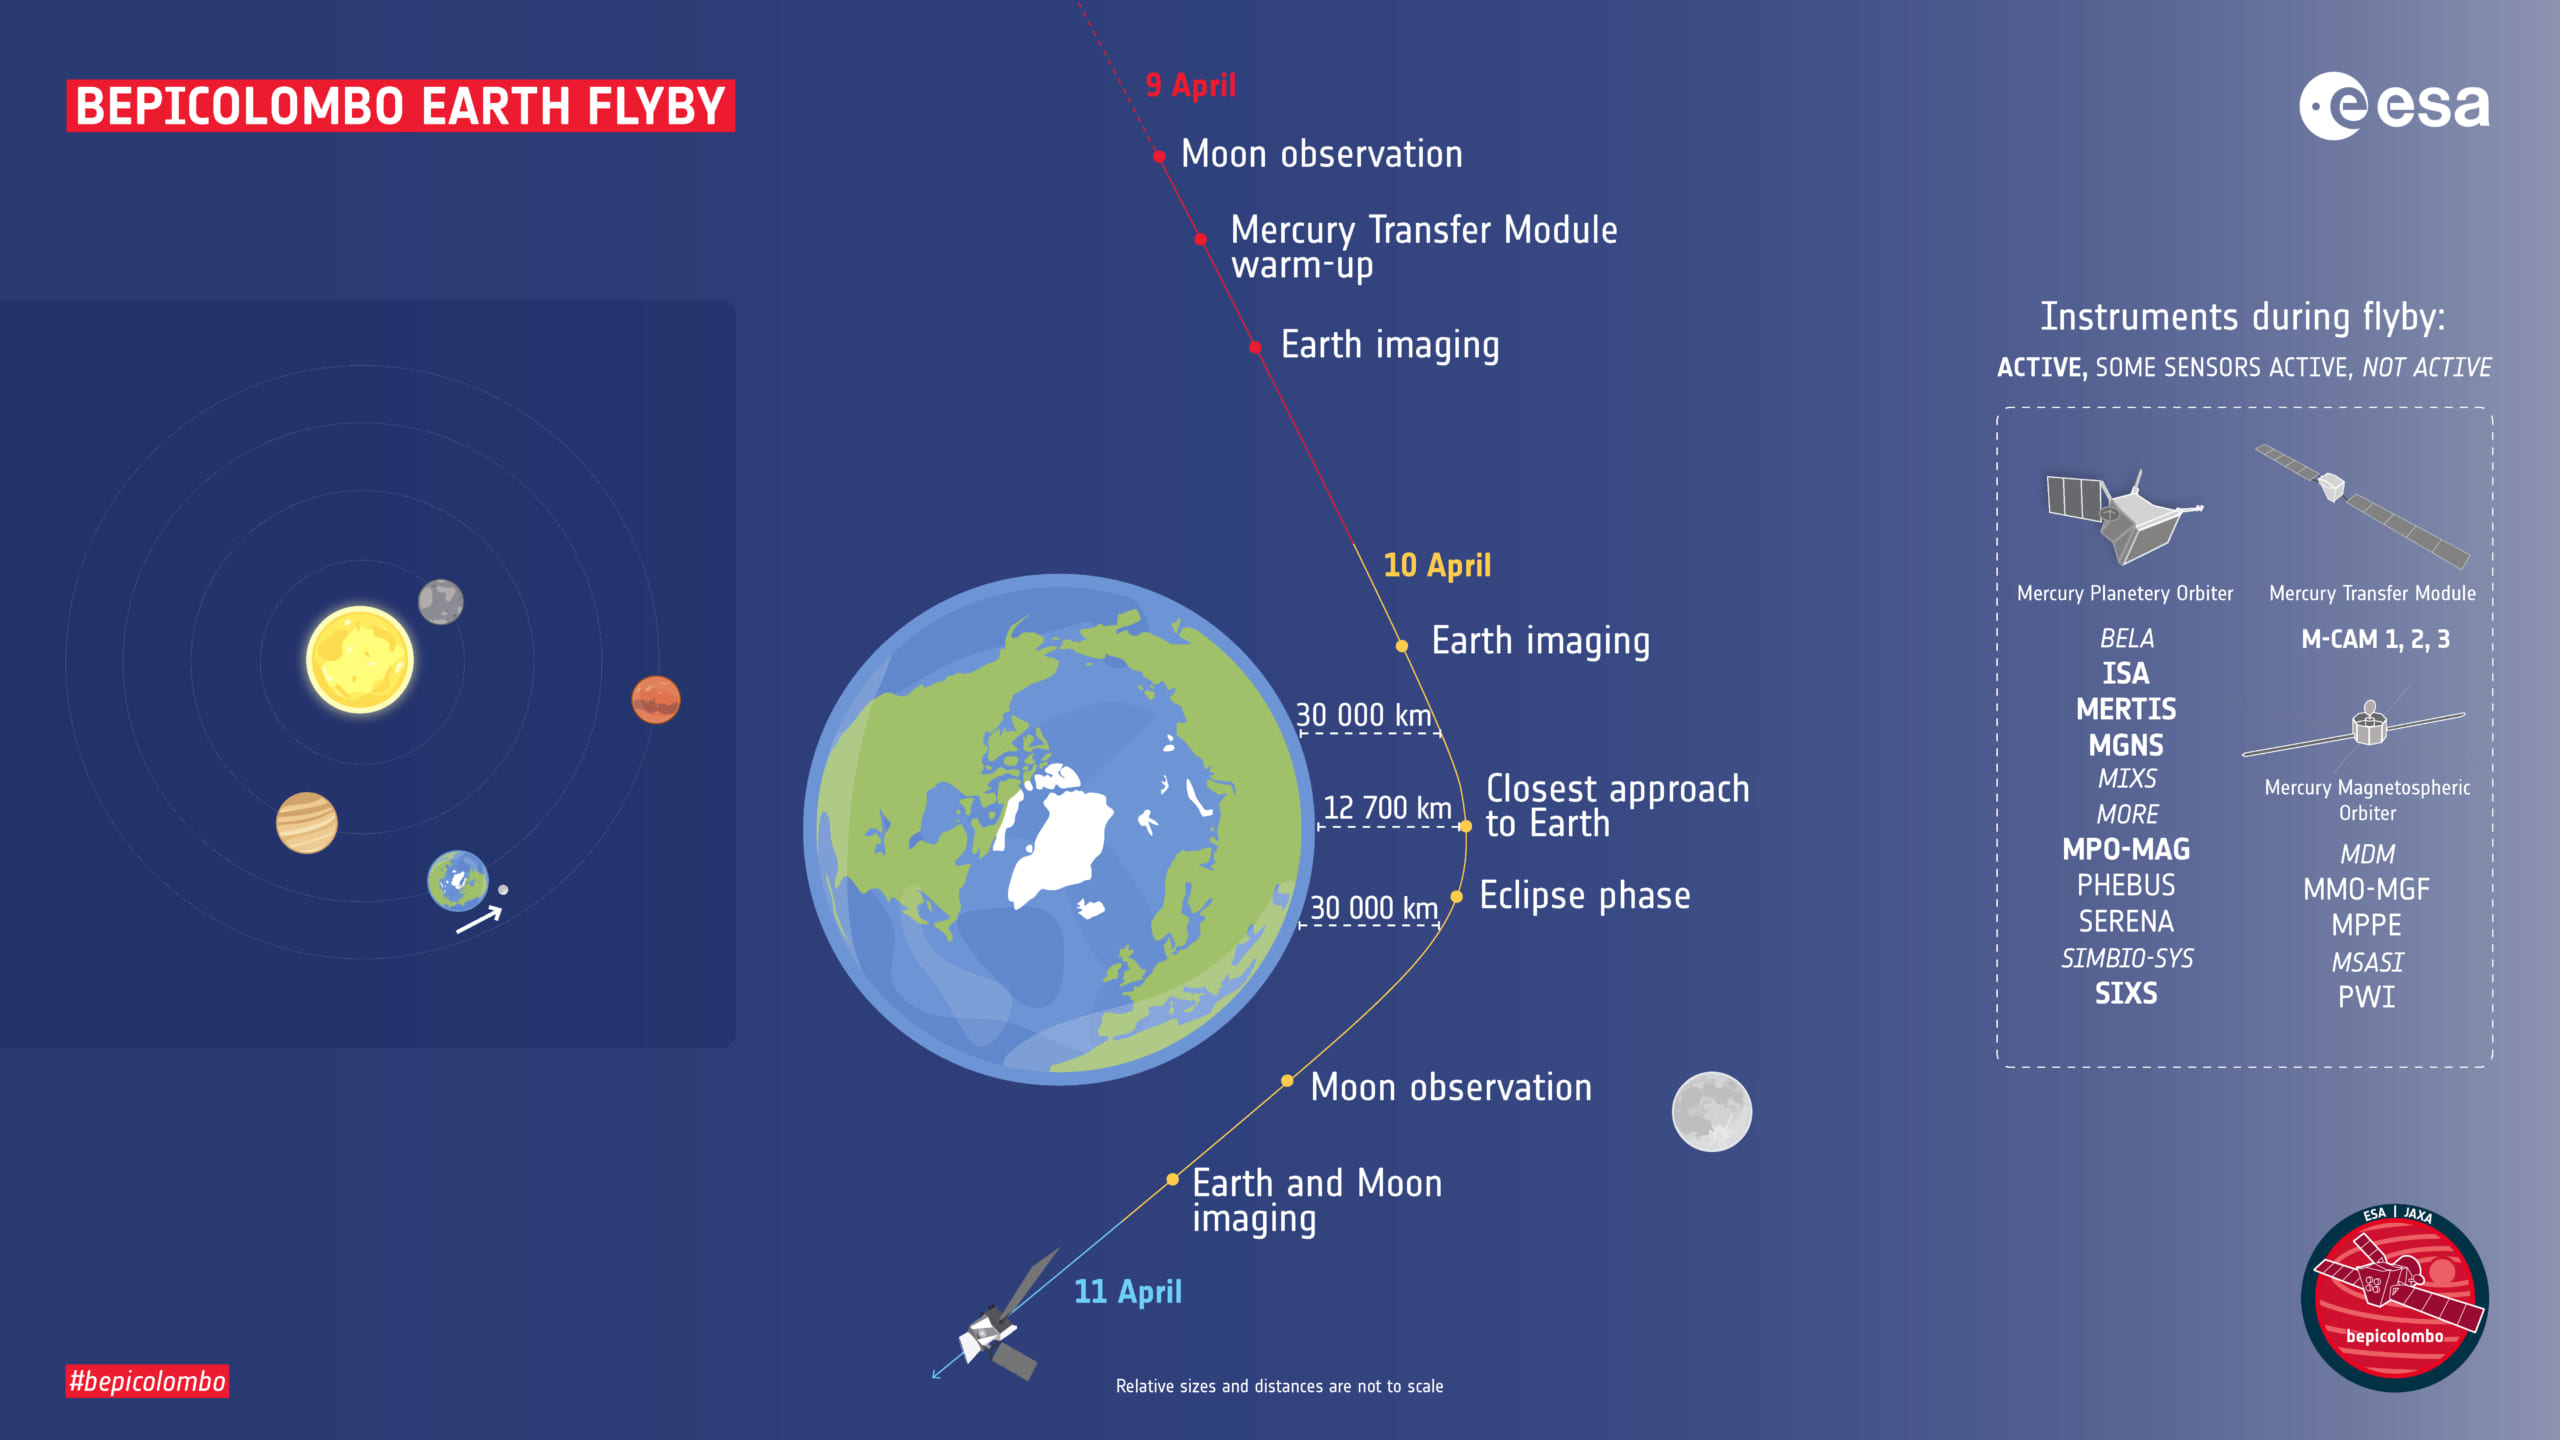 スイングバイで水星へ向かう探査機が地球に別れを告げる映像がエモいの画像 5 5 ナゾロジー